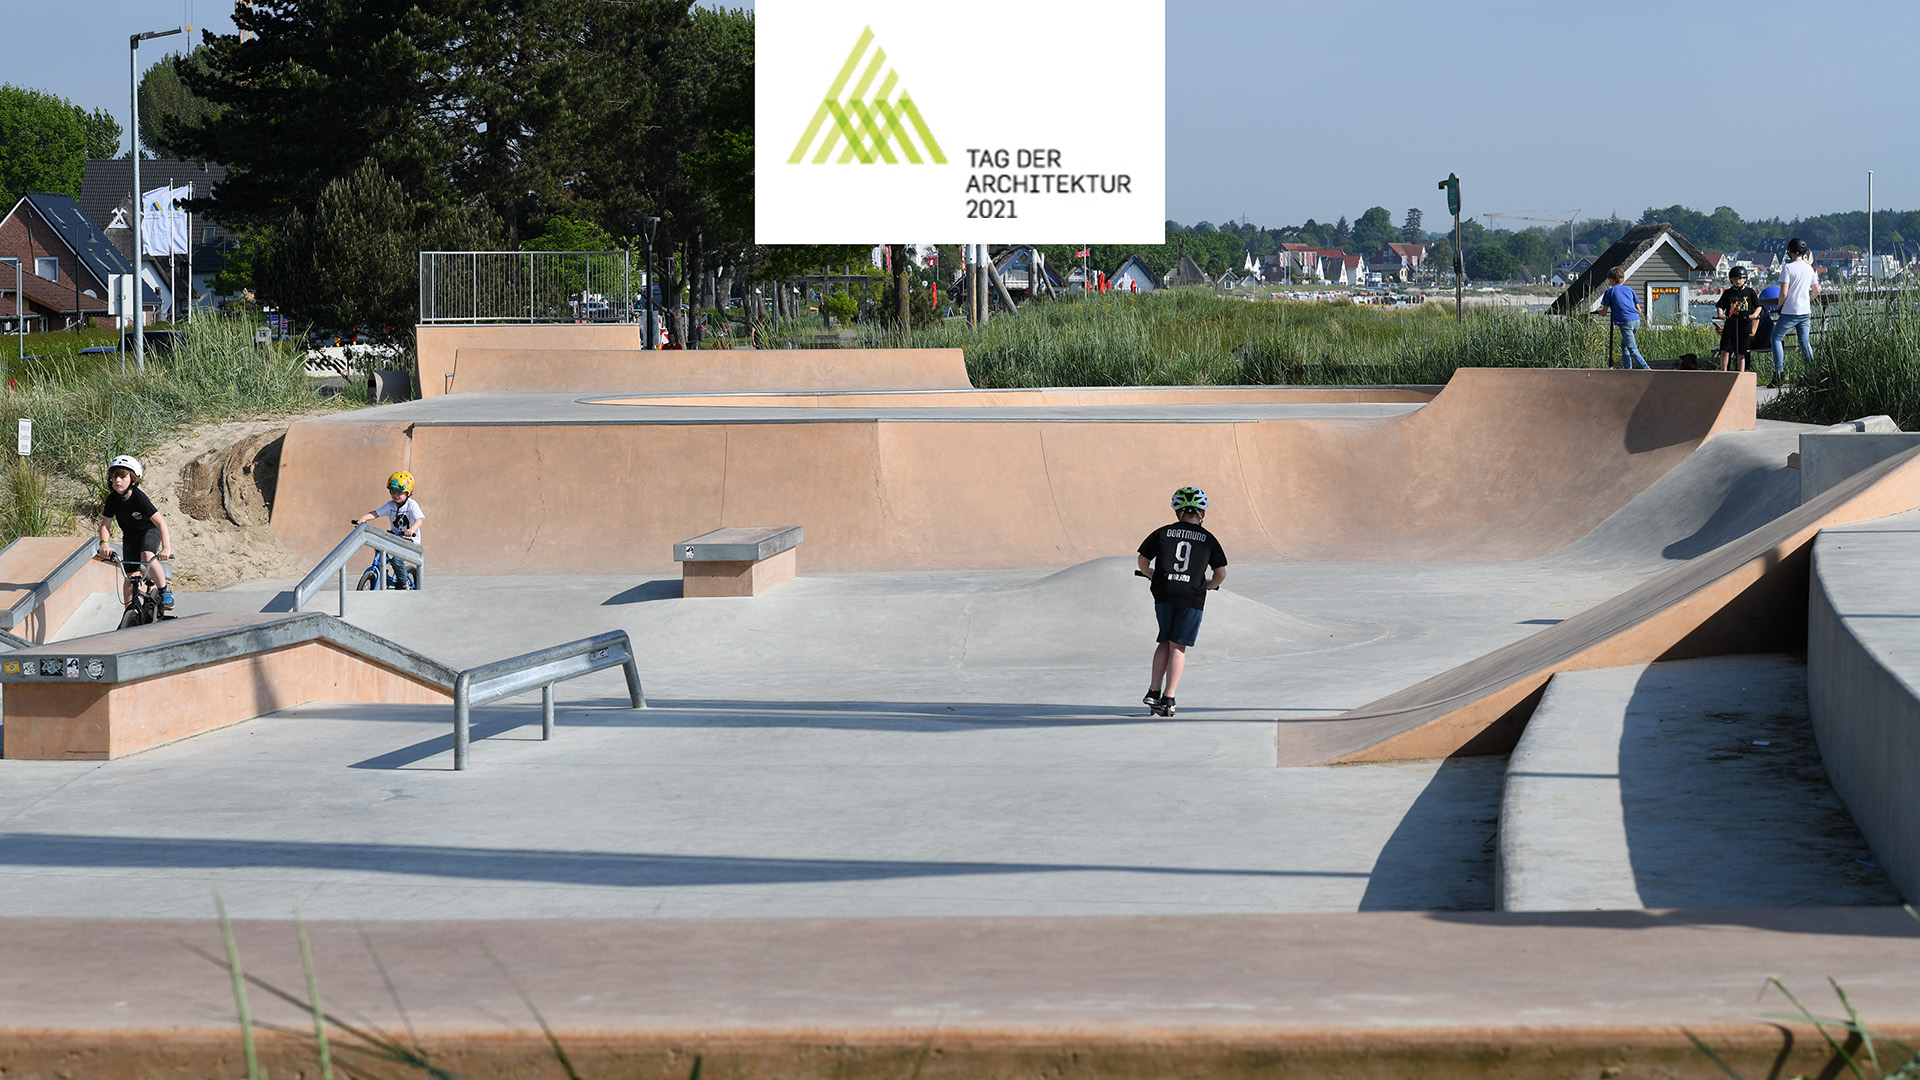 Skatepark Scharbeutz - Tag der Architektur 2021